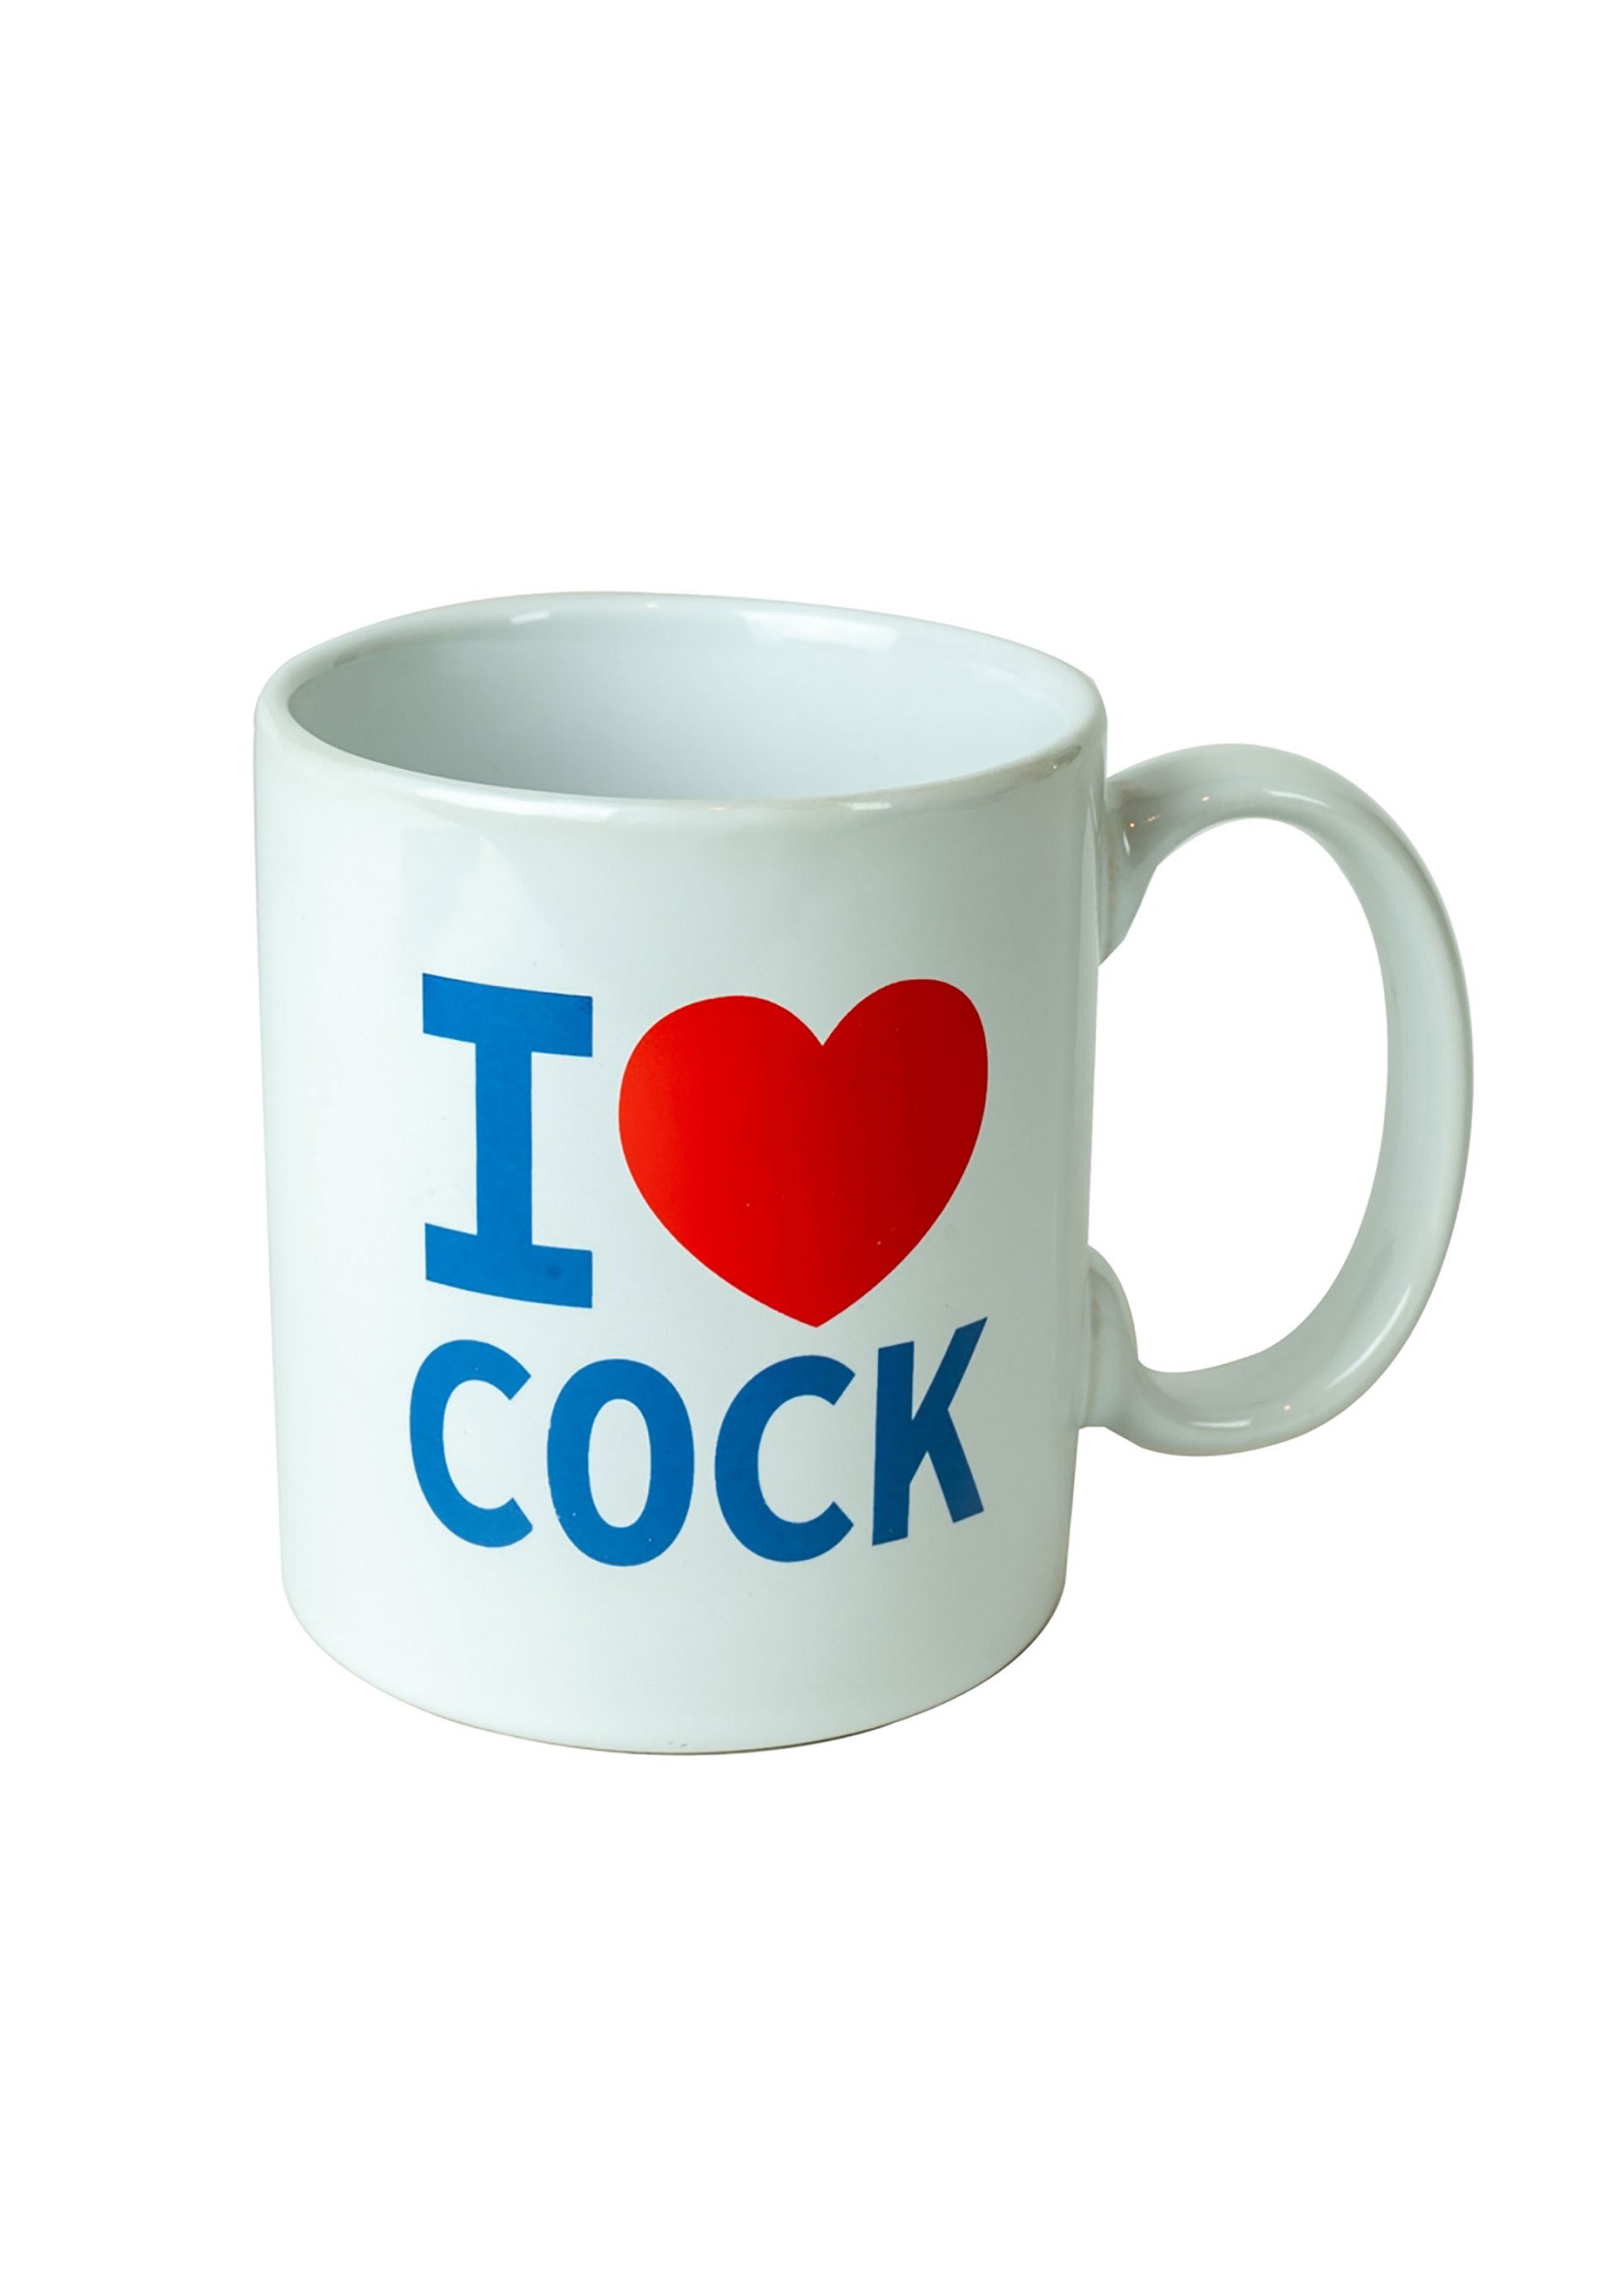 I Love Cock Mug